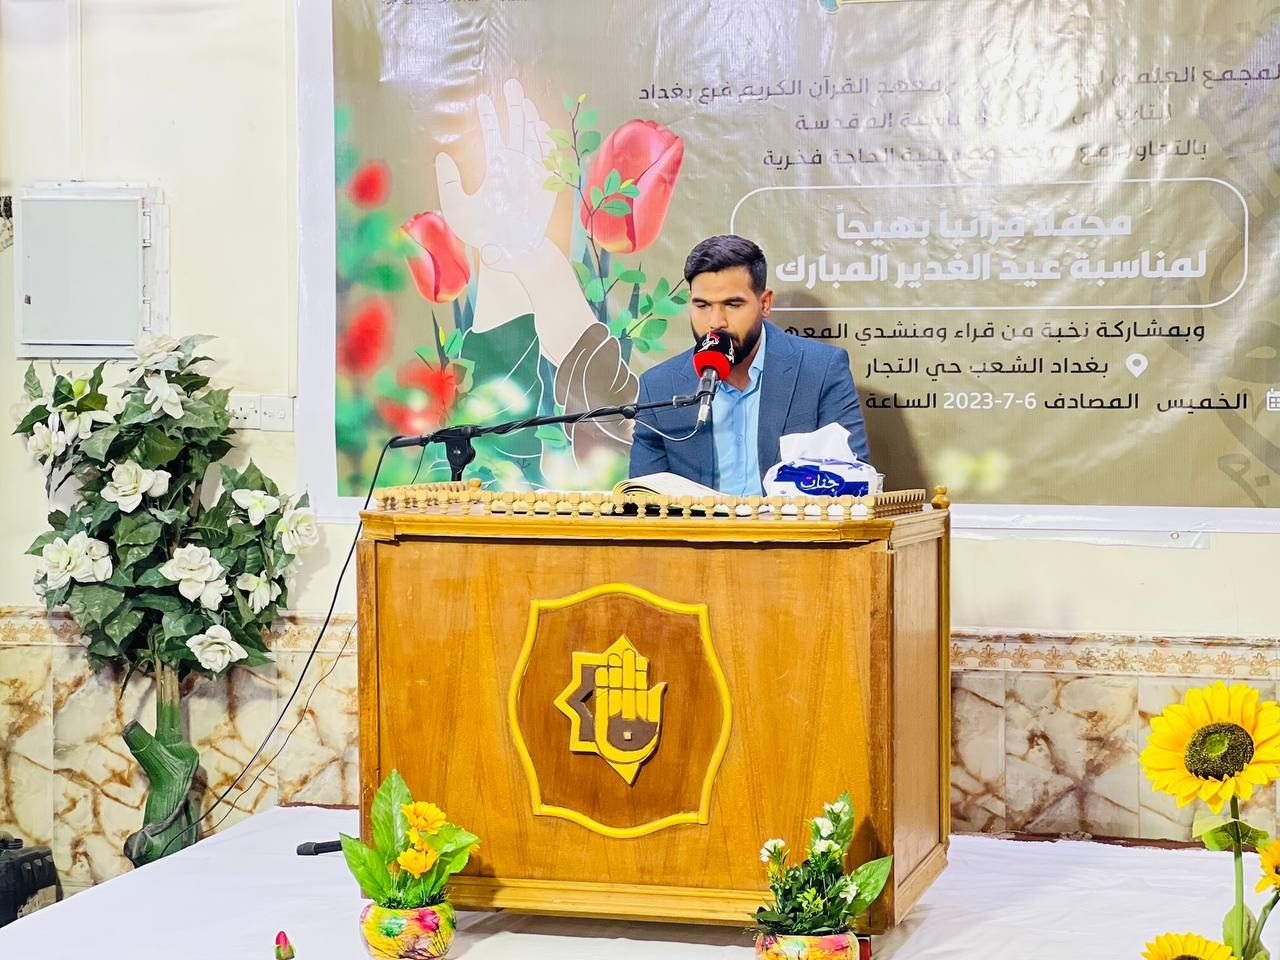 المجمع العلمي يحتفي بذكرى عيد الغدير الأغر في بغداد